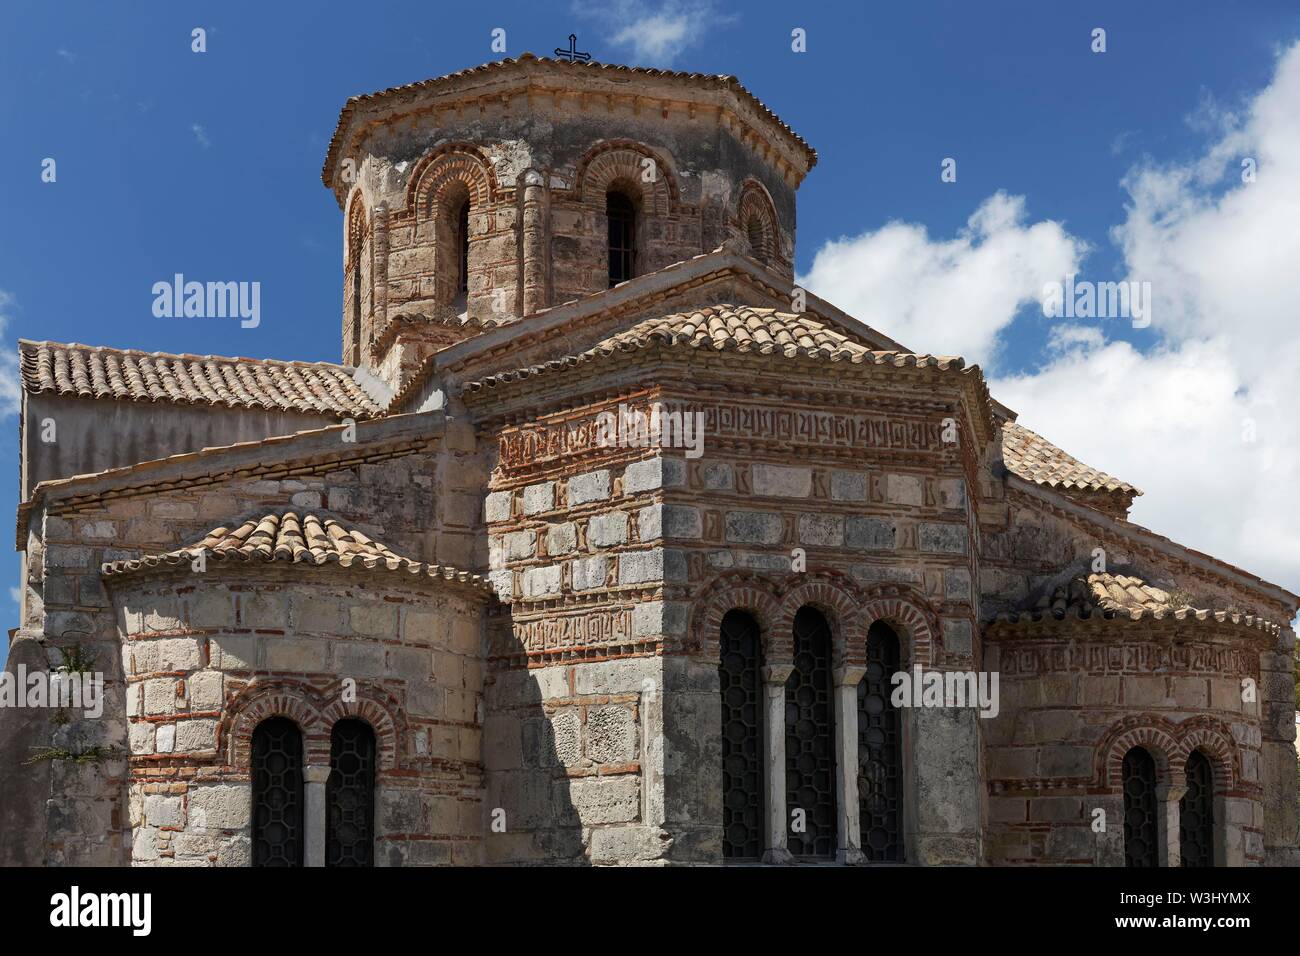 Eglise grecque orthodoxe de Jason et Sossipatros, architecture Byzantine, la ville de Corfou, l'île de Corfou, îles Ioniennes, Grèce Banque D'Images